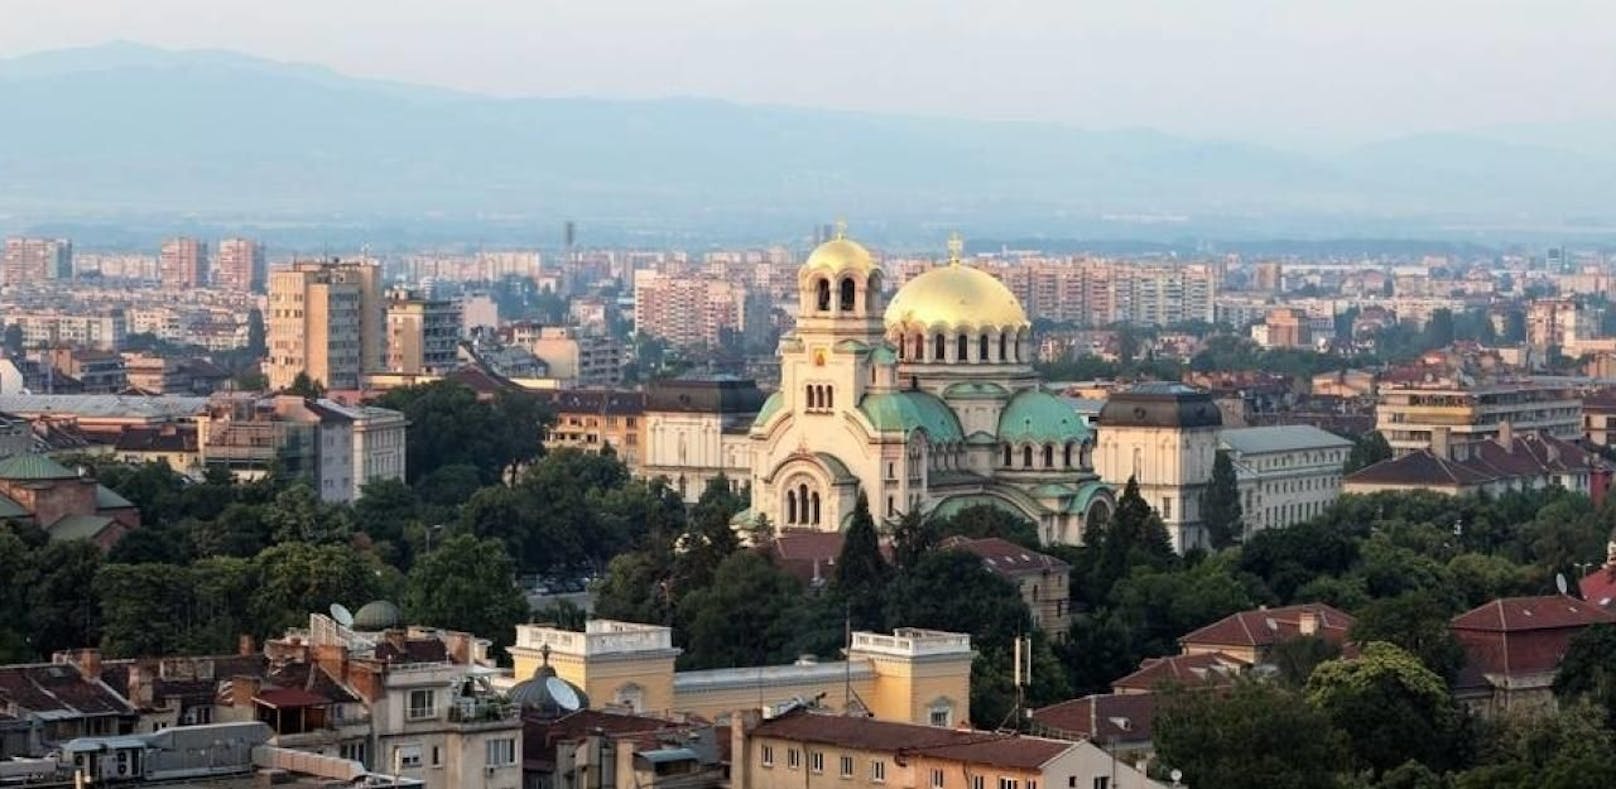 Bulgarien riegelt seine Hauptstadt komplett ab